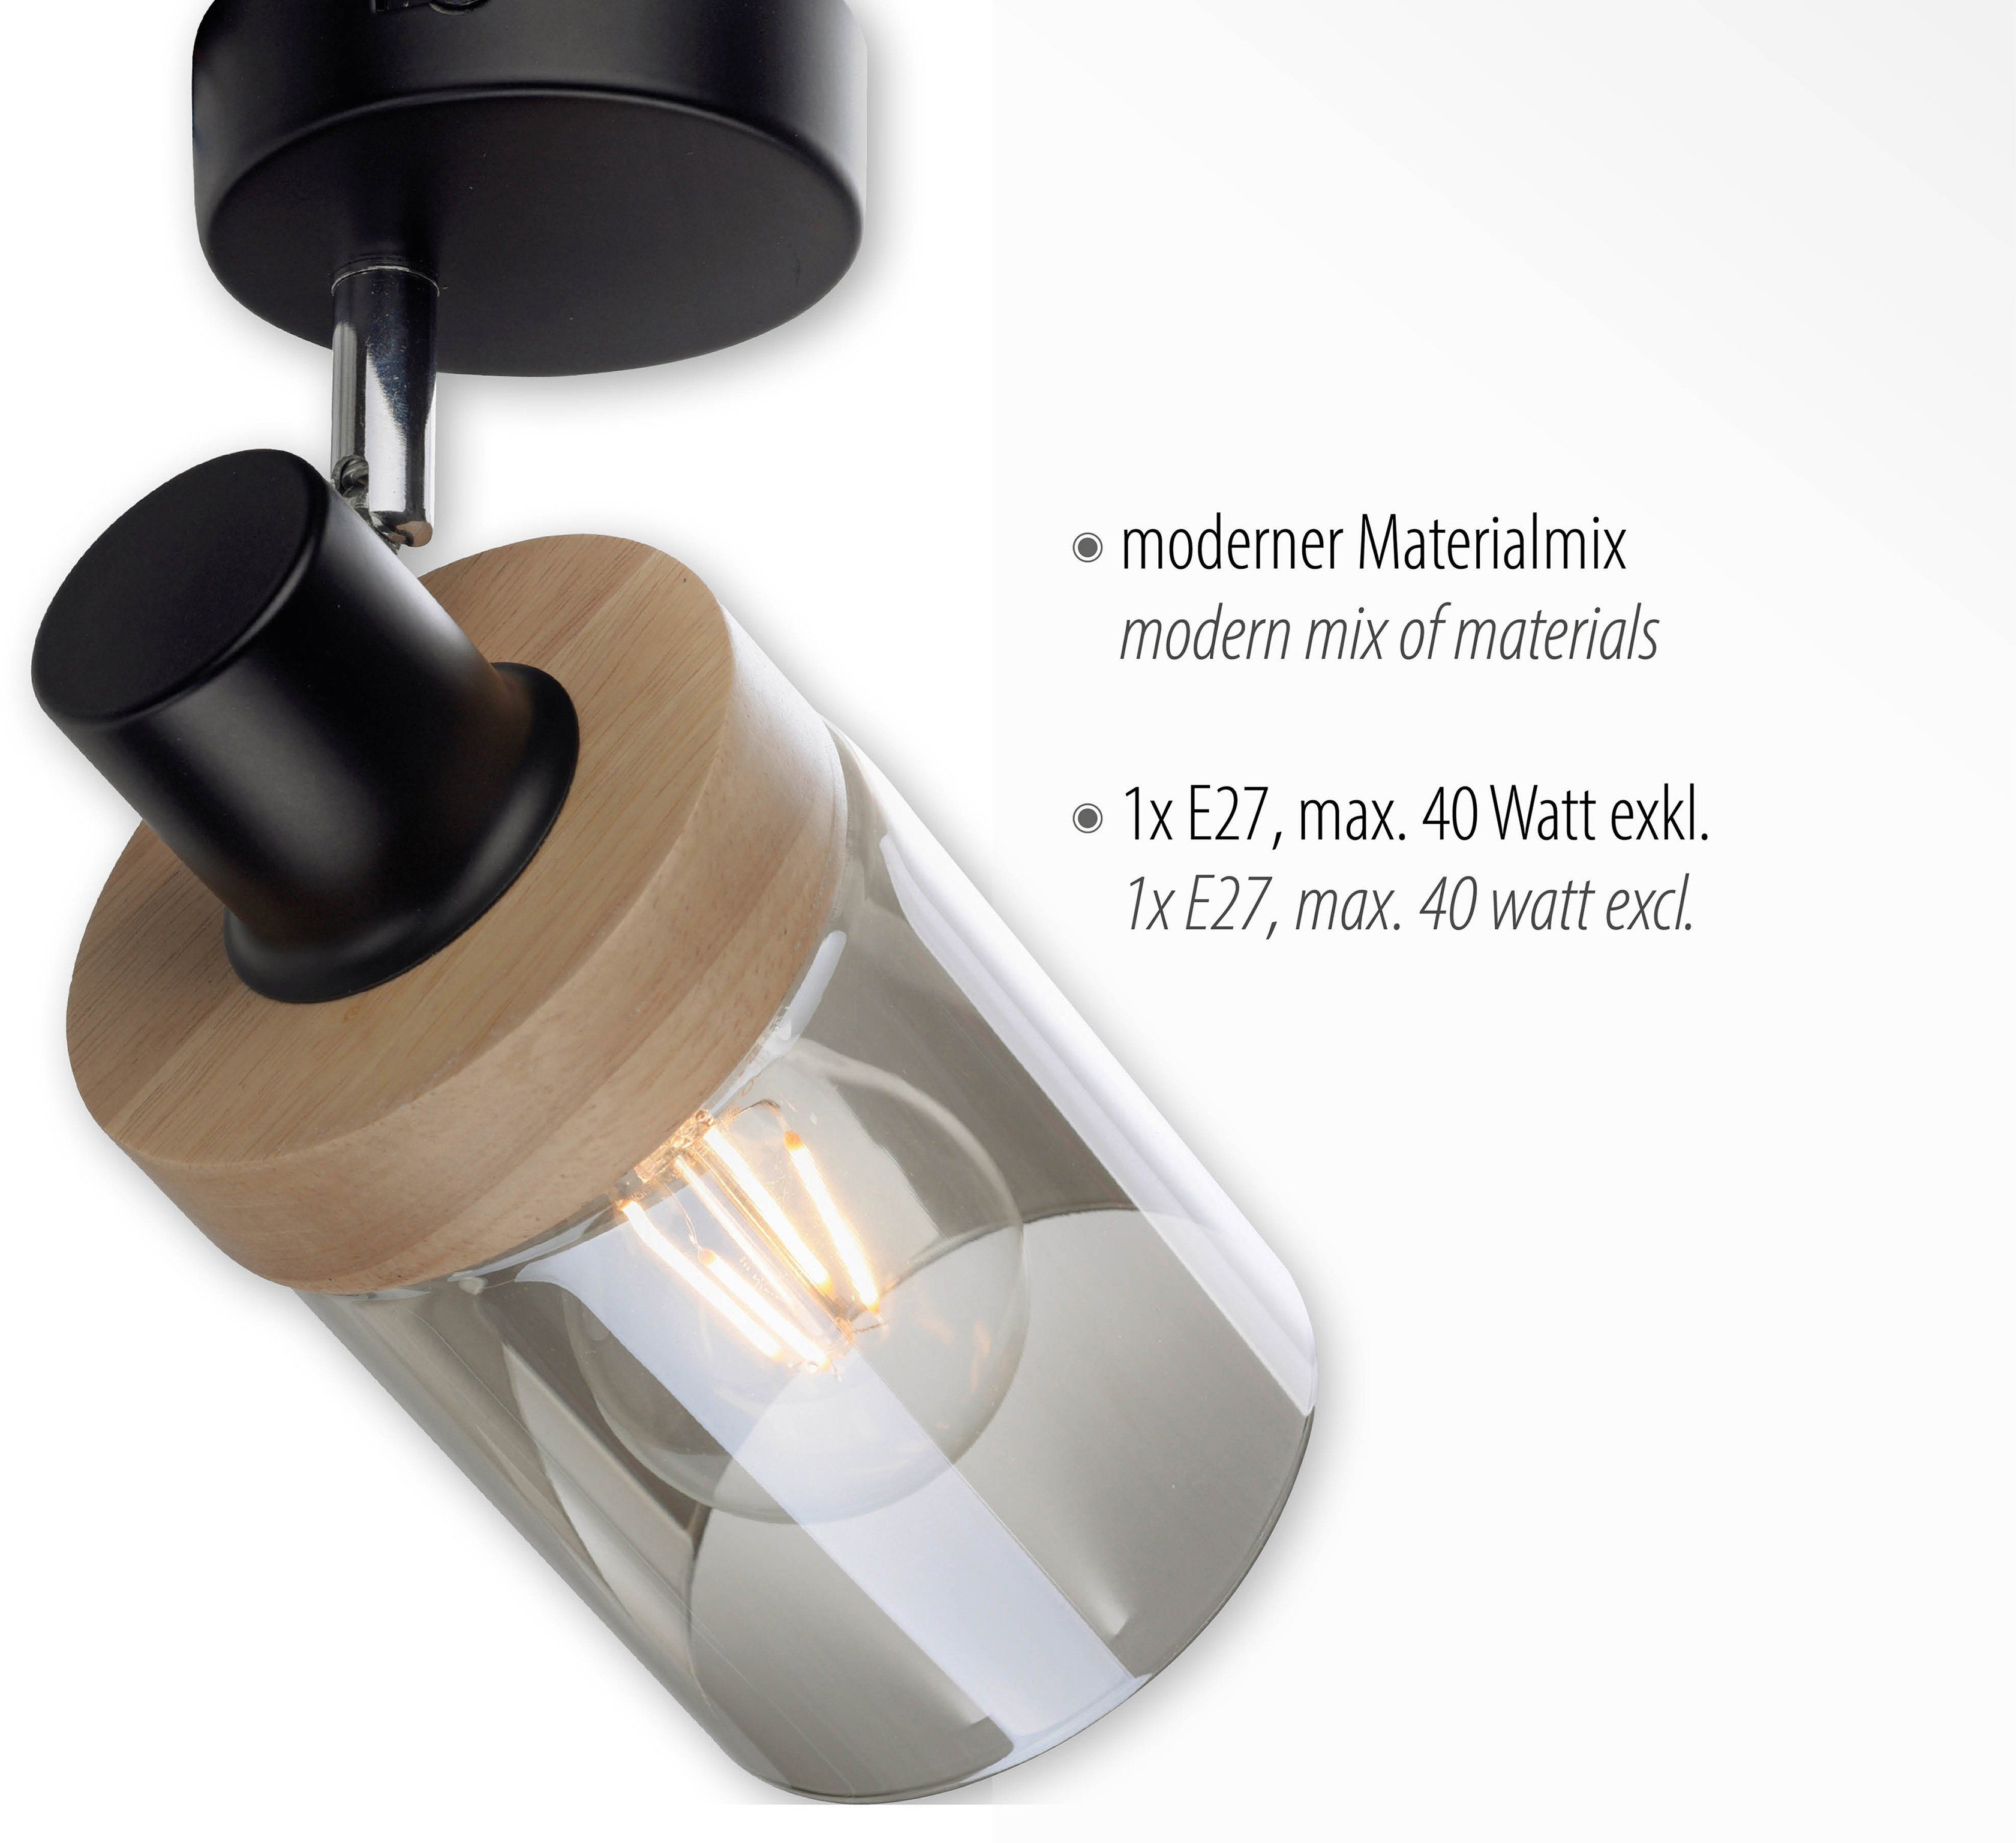 Home Wandlampe, affaire Wandleuchte Holz, geeignet Leuchtmittel E27 - für Tendon, Leuchtmittel, Rauchglas, Glas, ohne